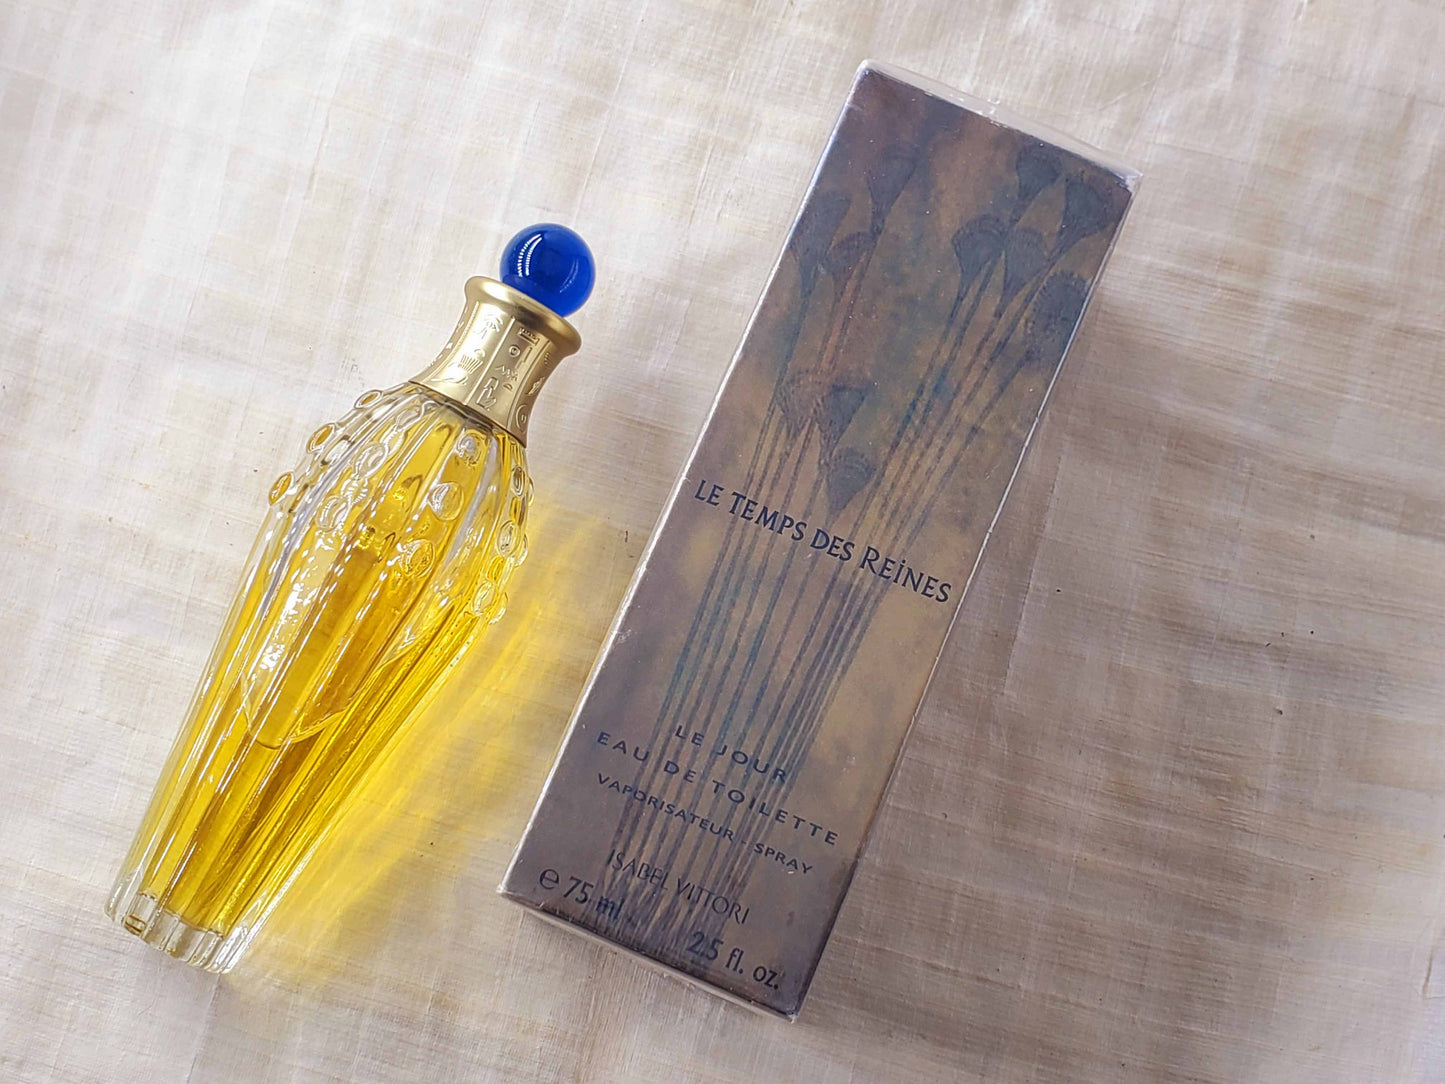 Le Temps de Reines ID Parfums Isabel Derroisné 1998 for women EDT Spray 75 ml 2.5 oz, Vintage, Rare